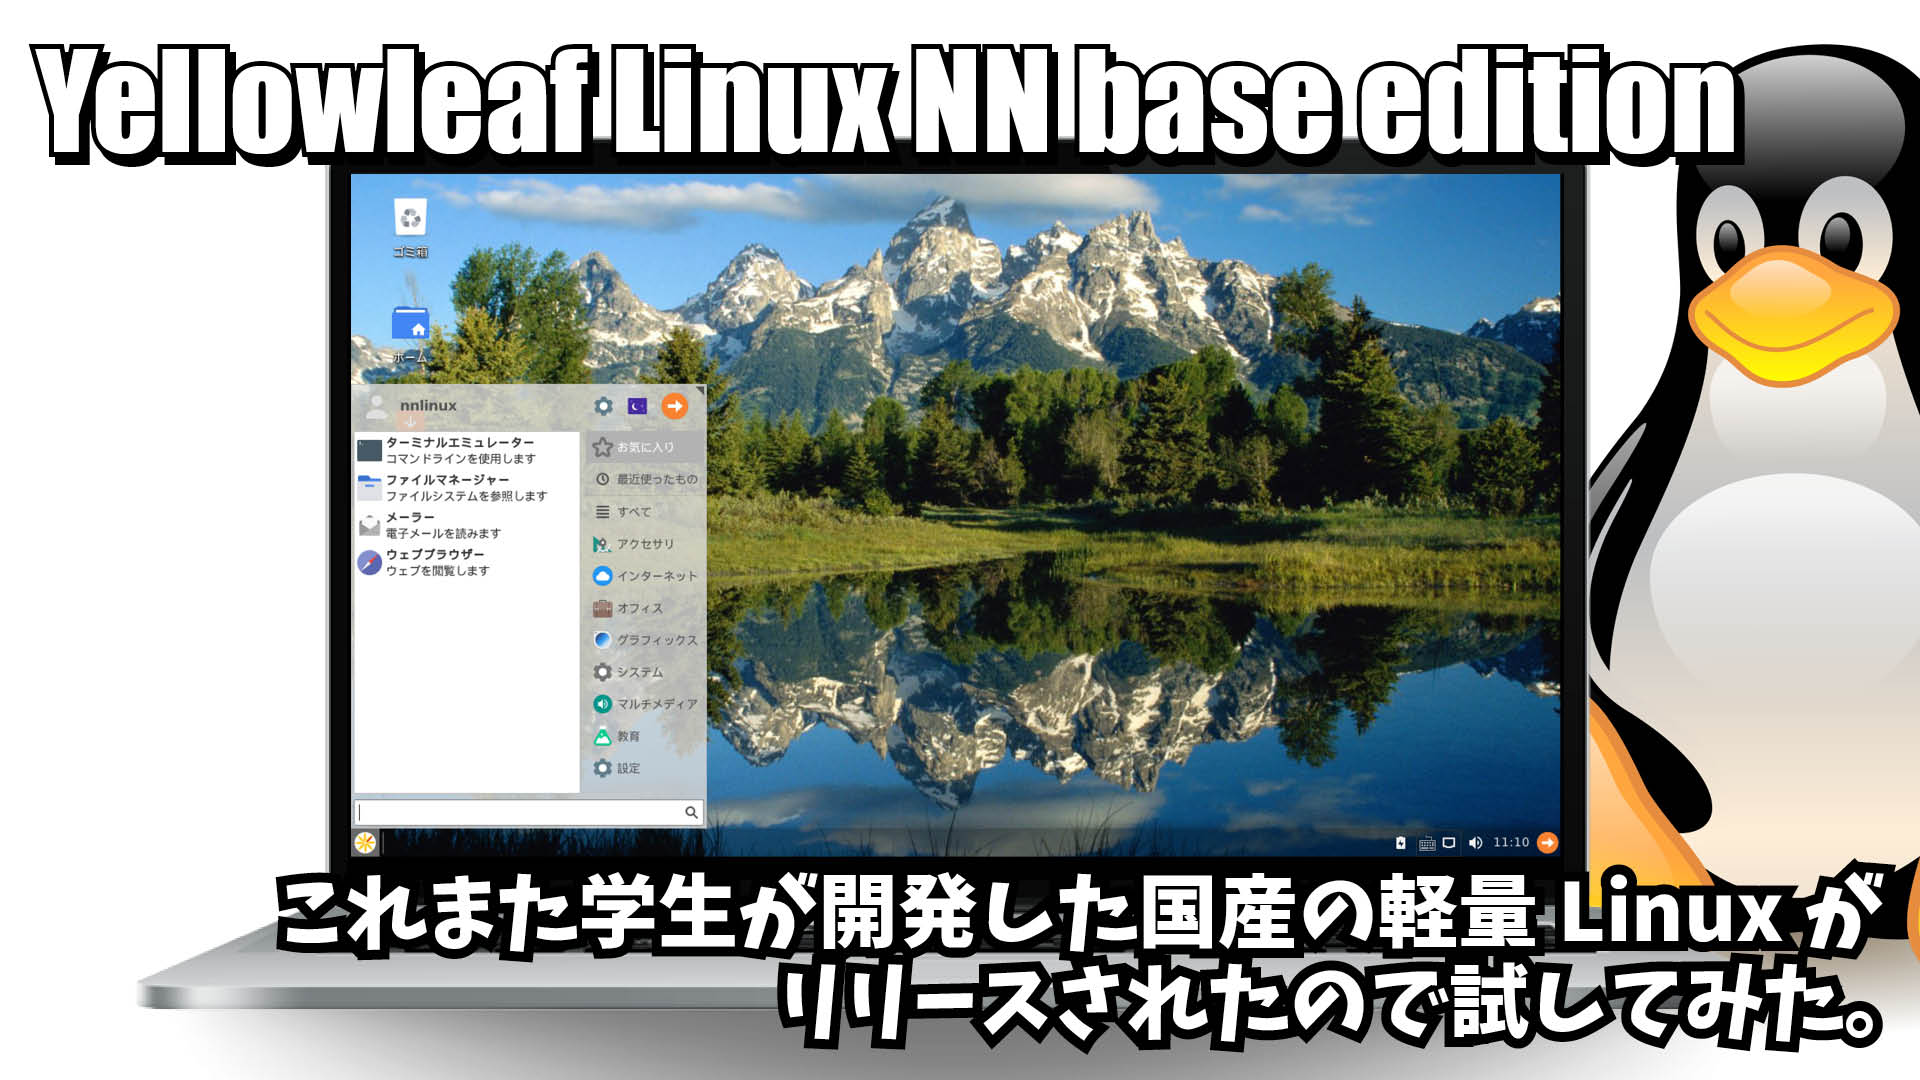 Yellowleaf Linux NN base edition: これまた学生が開発した国産の軽量Linuxがリリースされたので試してみた。